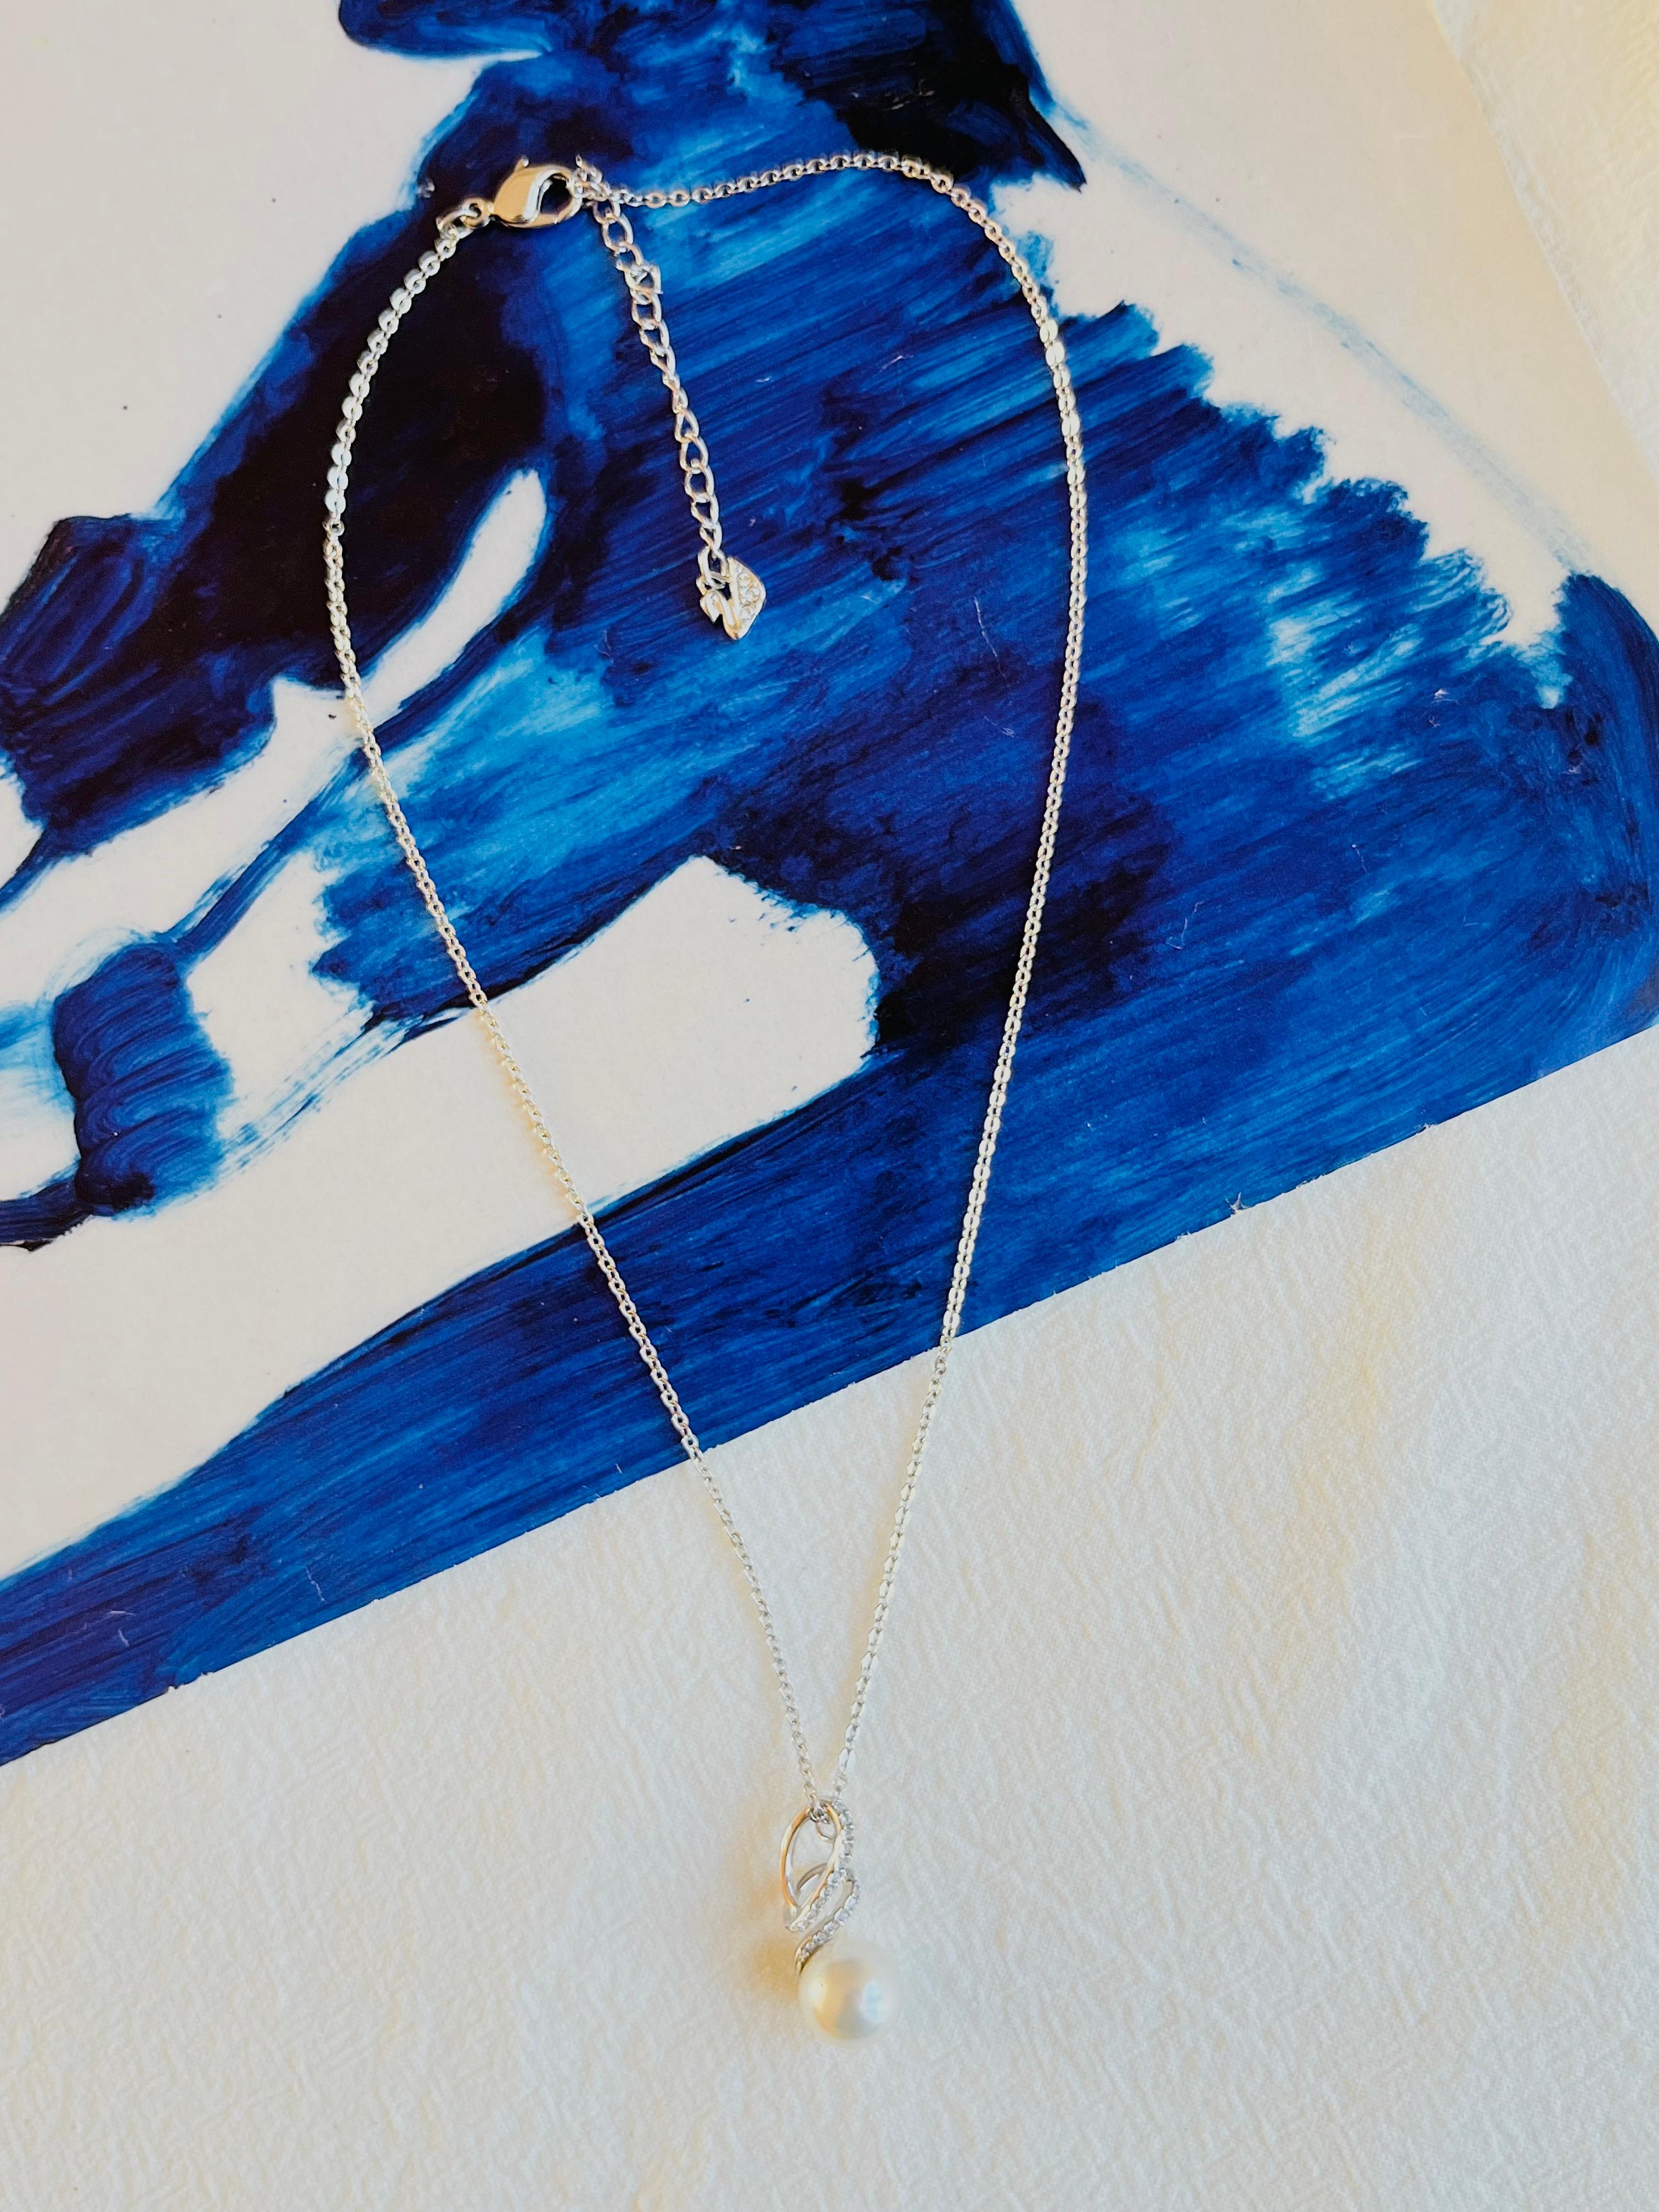 Swarovski Dangle White Round Pearl Crystals Spiral Hook Pendant Necklace, Rhodium Silver Plated, BNWT

Nouveau, jamais utilisé. 100% authentique.

Ce pendentif à l'élégance intemporelle donne à chaque tenue une touche étincelante. Une perle de